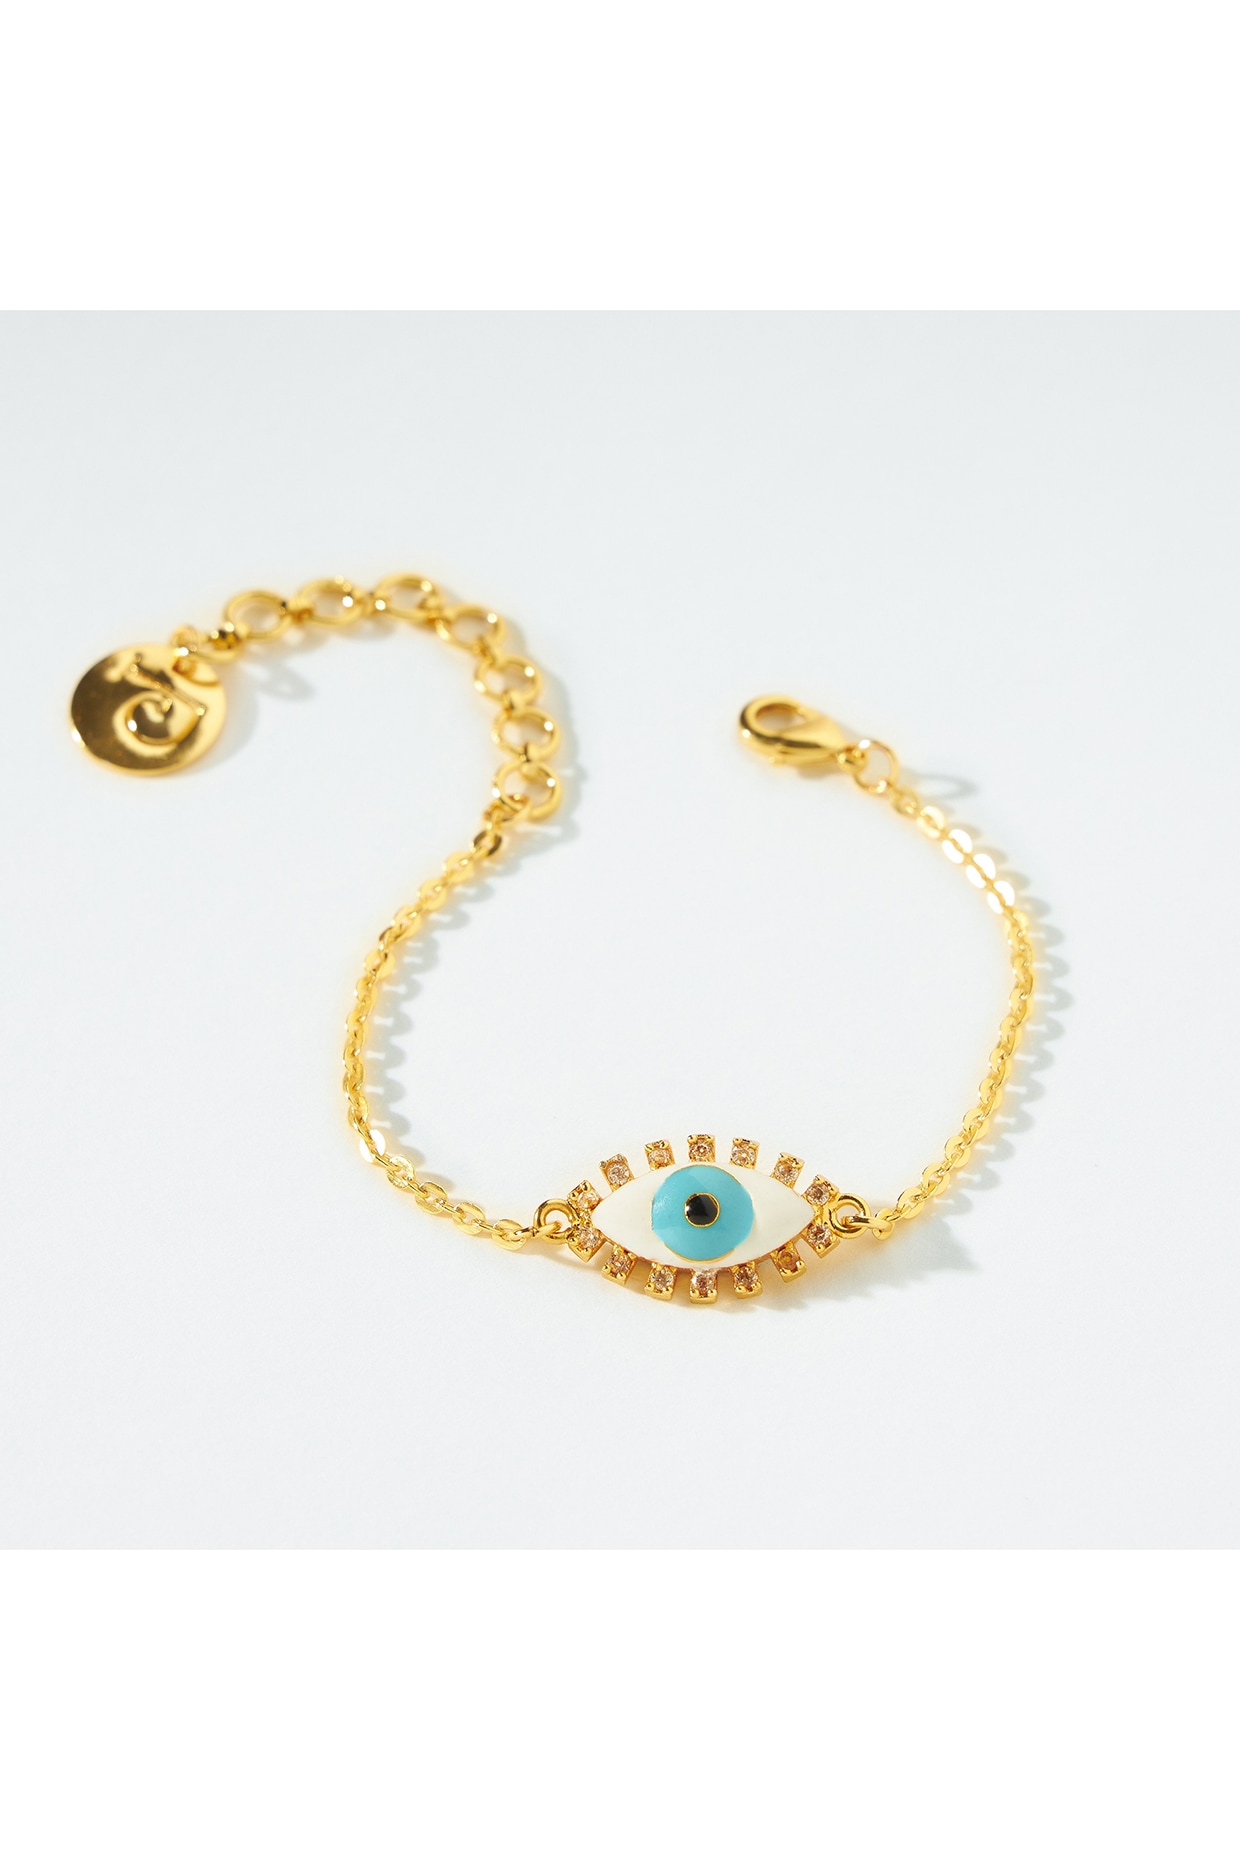 Designer Bracelets | Buy Handmade Women's Bracelets Online | PRERTO –  Tagged 